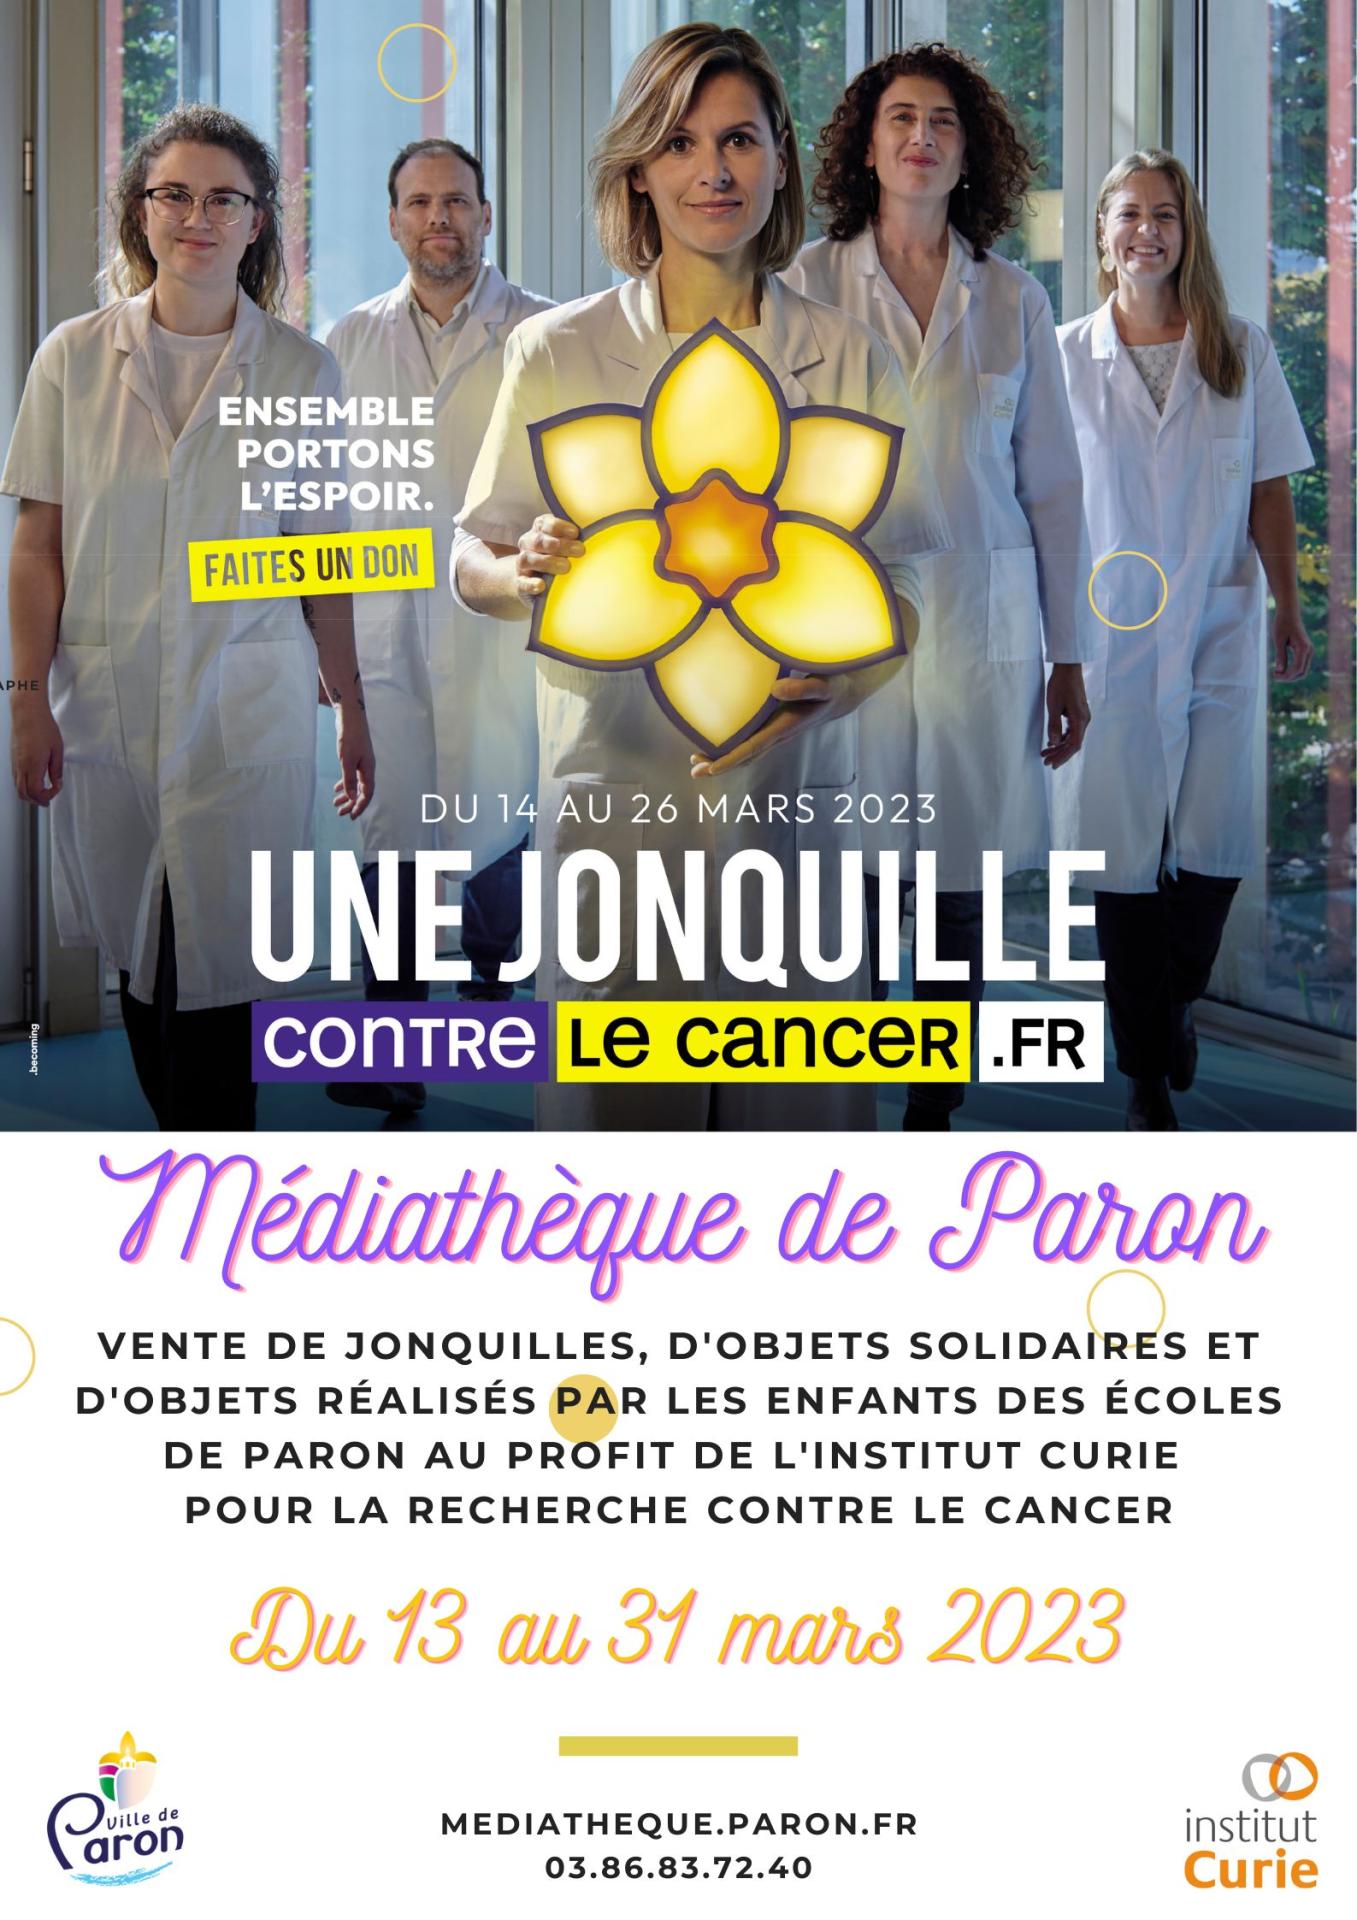 Venez participer, du 13 au 31 Mars à la Médiathèque de Paron, à la vente de jonquilles et d'objets solidaires réalisés par les enfants des écoles de Paron au profit de l'Institut Curie pour la Recherche contre le Cancer.